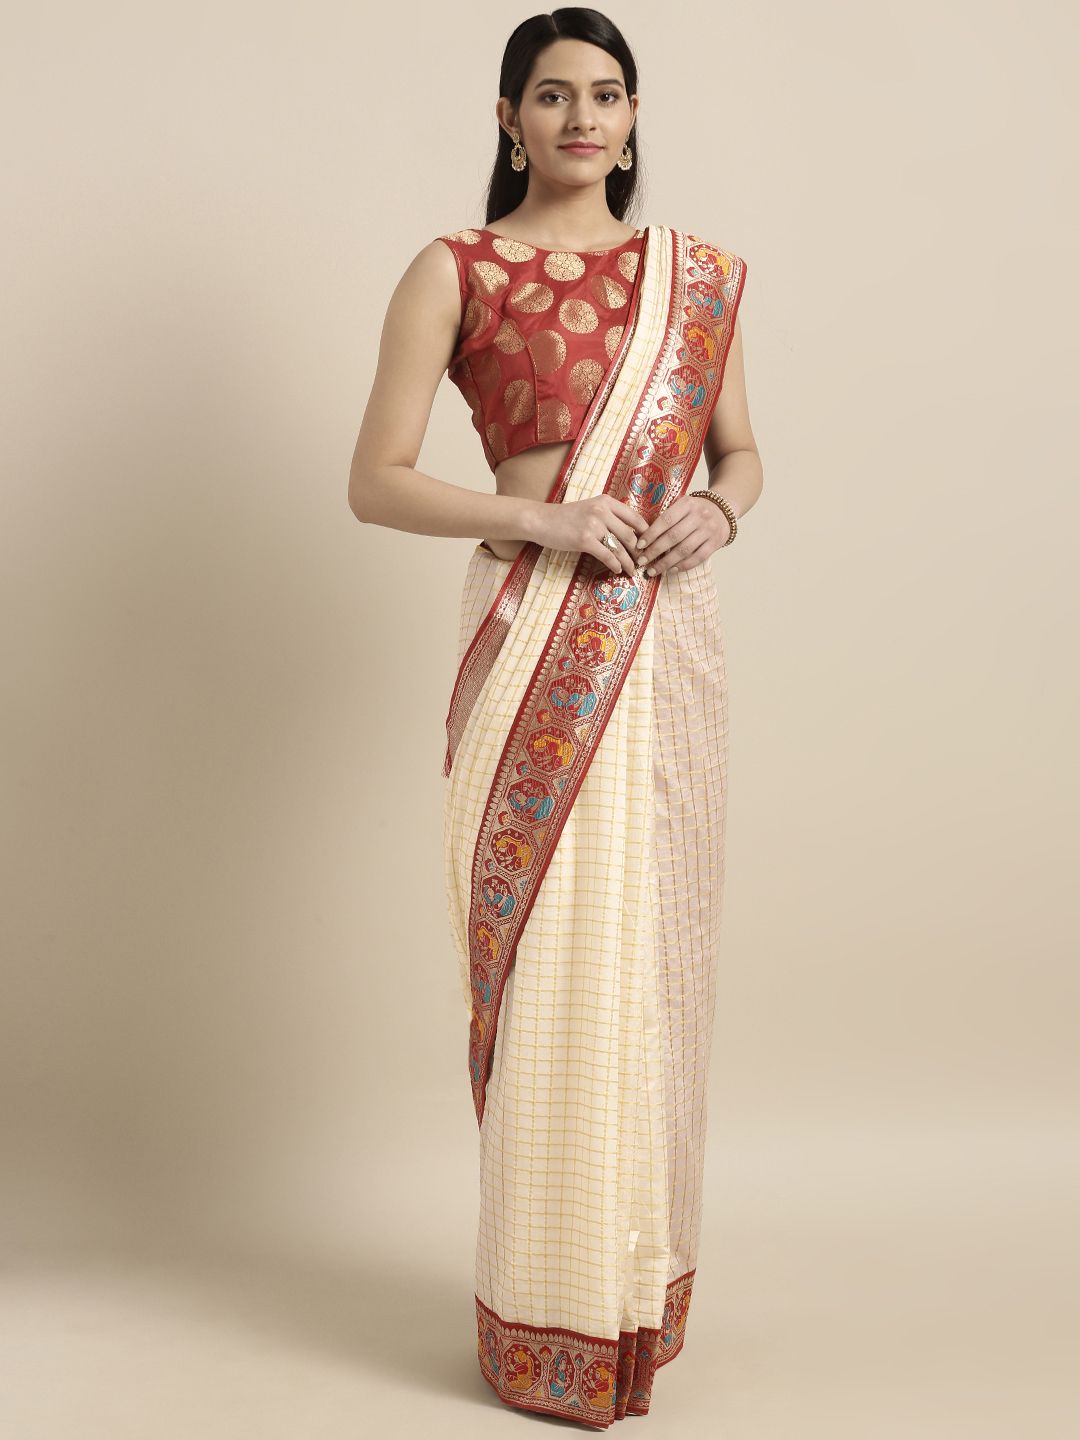 Varkala Silk Sarees Cream-Coloured & Red Silk Blend Woven Design Banarasi Saree Price in India